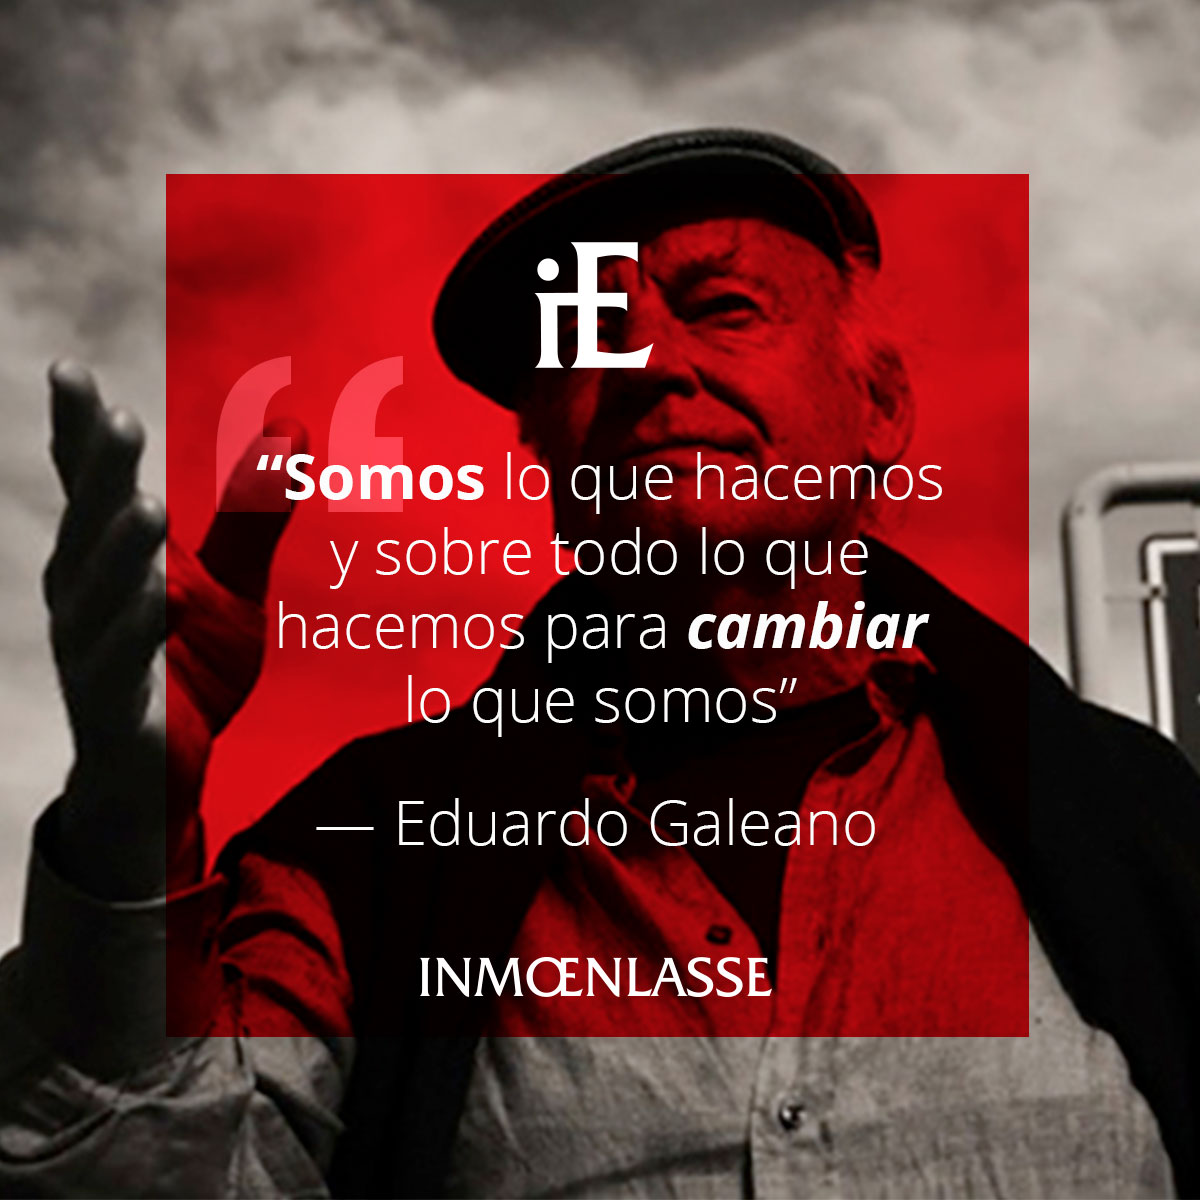 Eduardo Galeano - Somos lo que hacemos